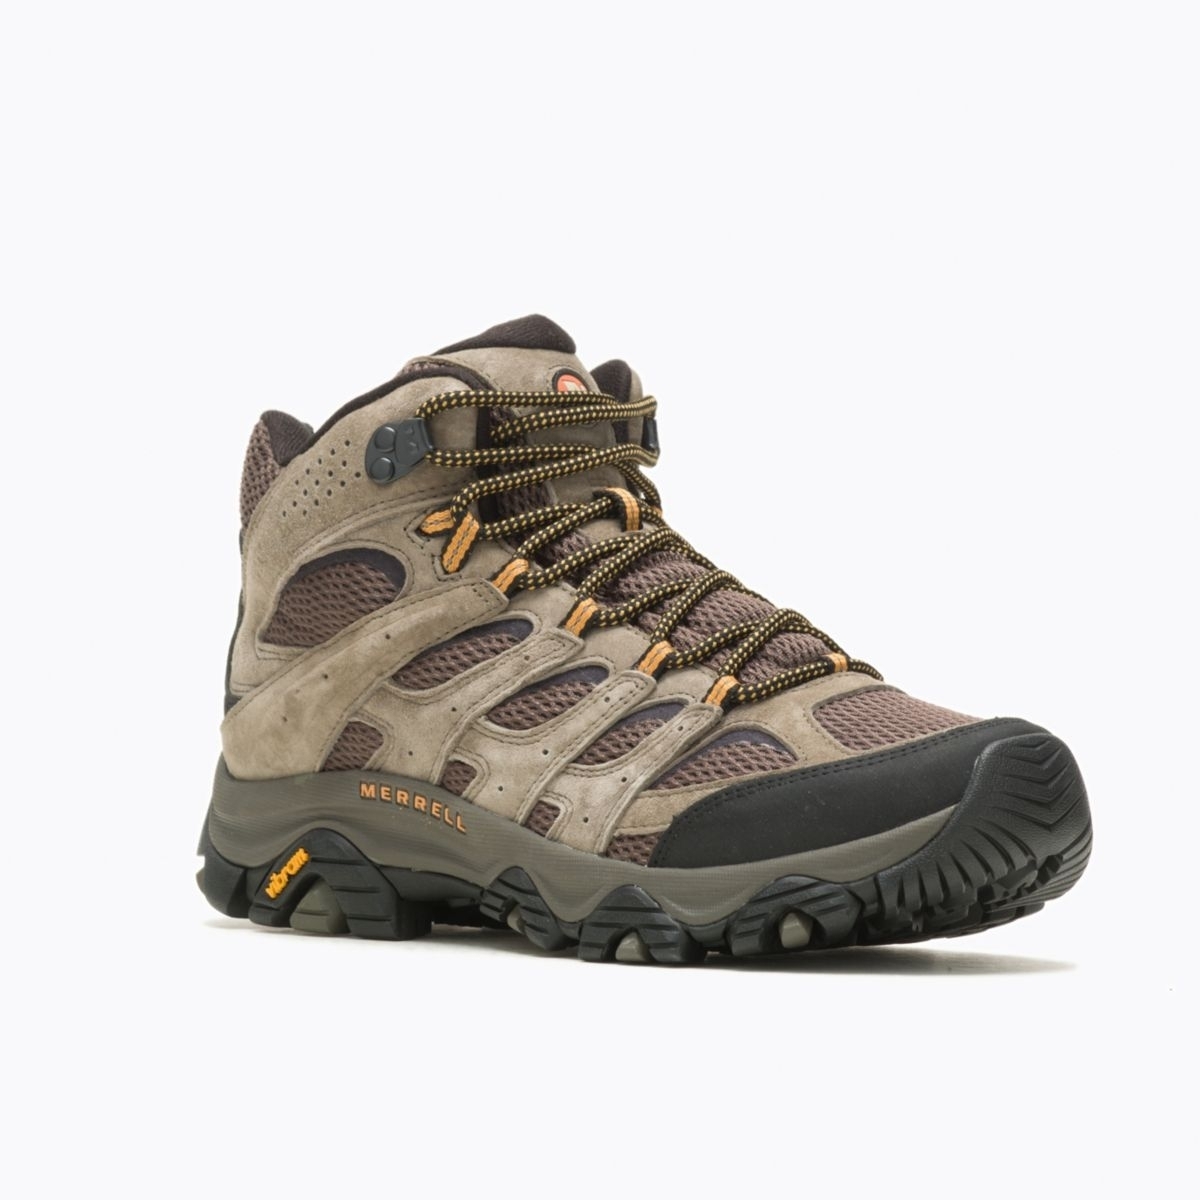 Merrell Men's Moab 3 Mid GORE-TEX Hiking Boot Walnut - J035795 WALNUT - WALNUT, 11.5